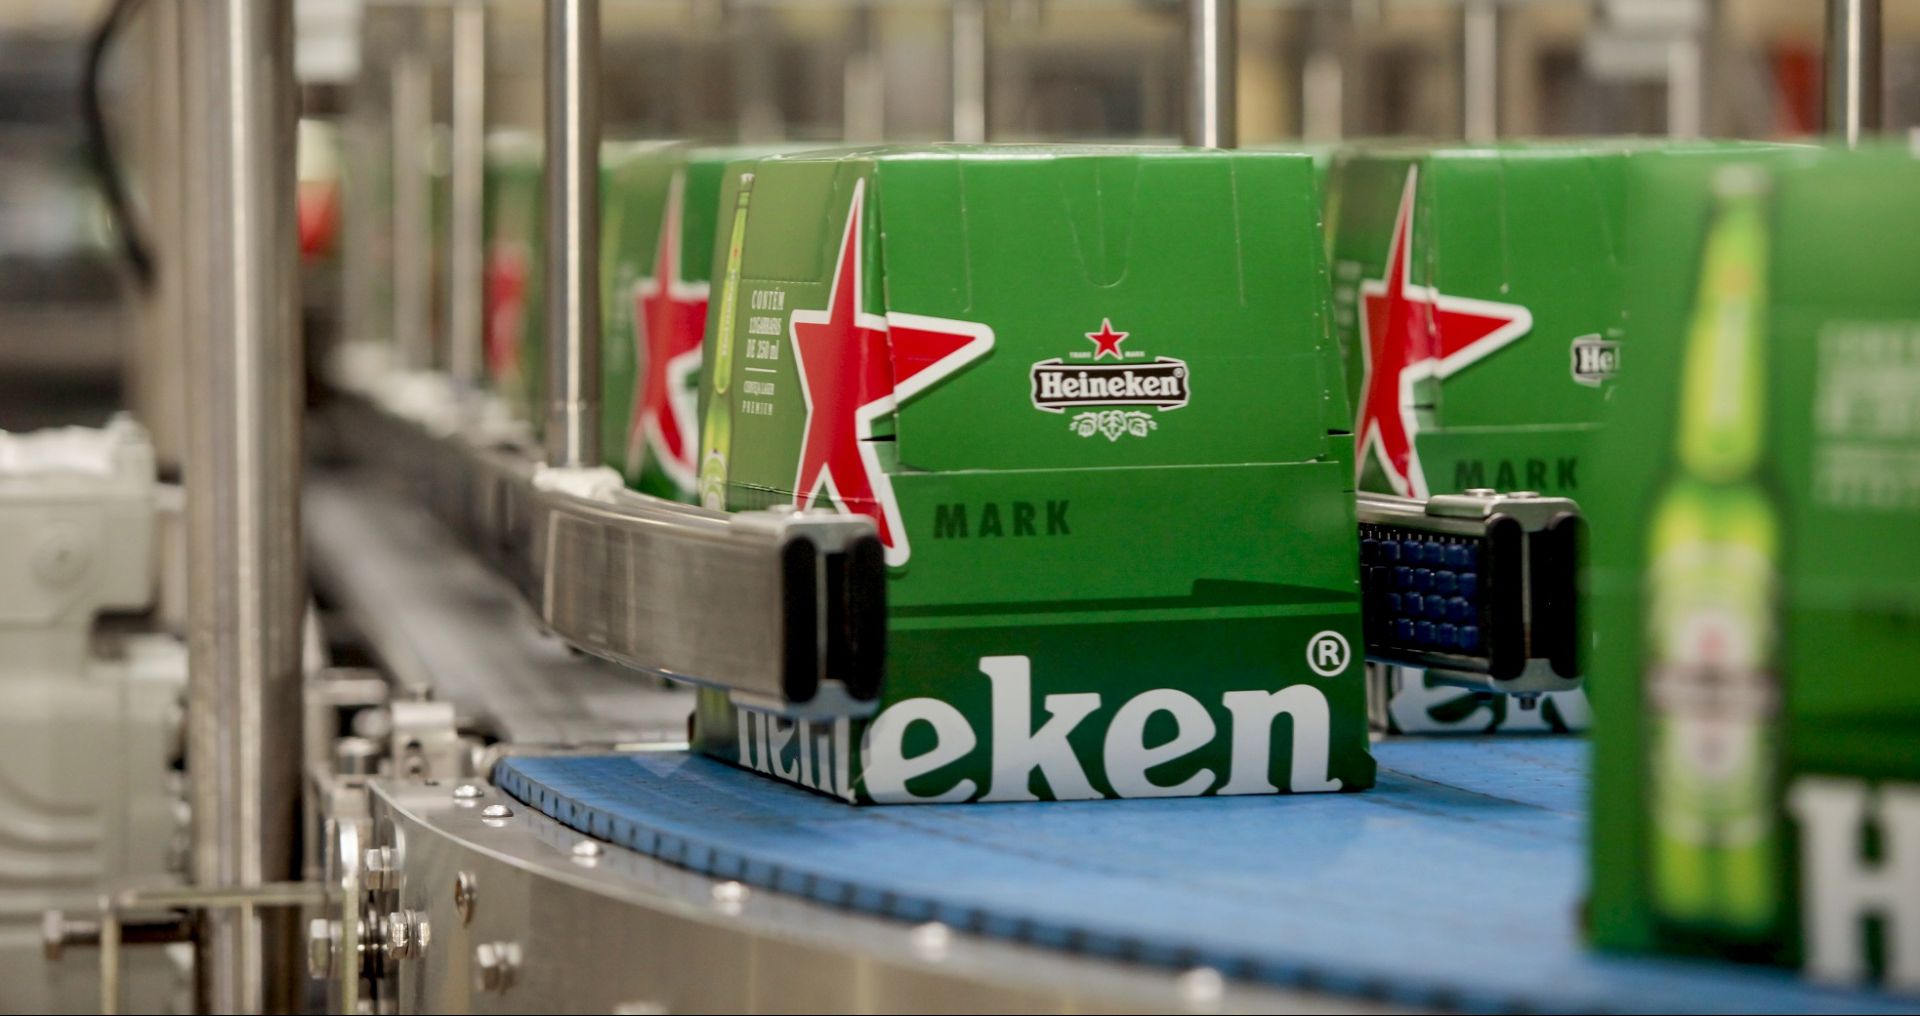 Heineken lança Desperados em Minas Gerais - Economia - Estado de Minas